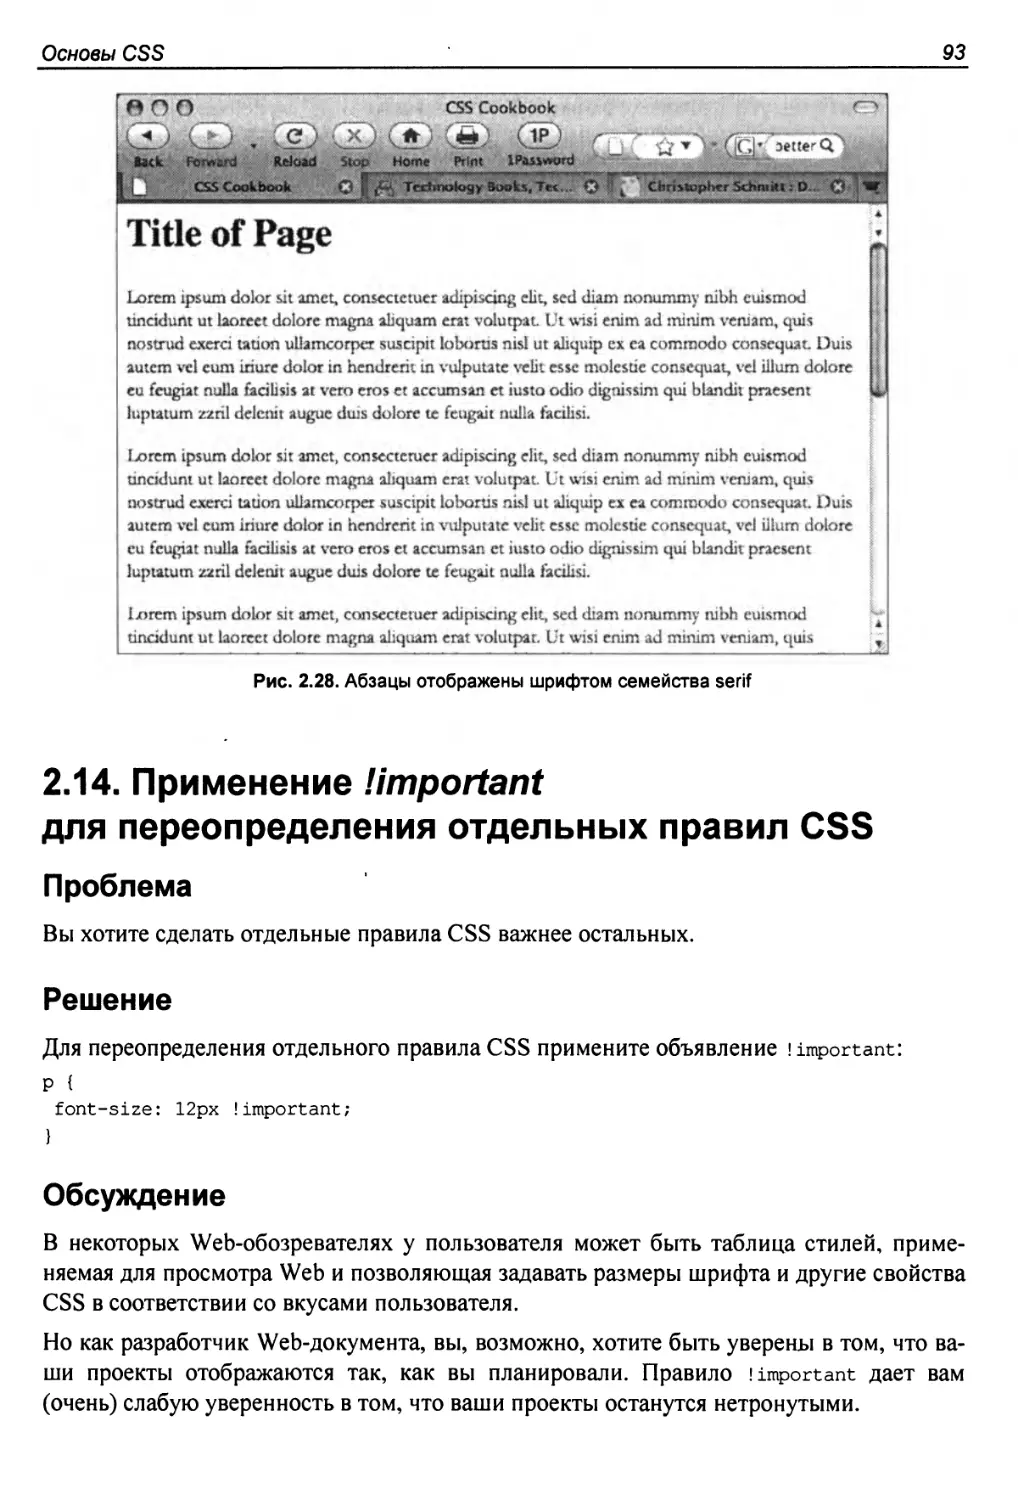 2.14. Применение !important для переопределения отдельных правил CSS